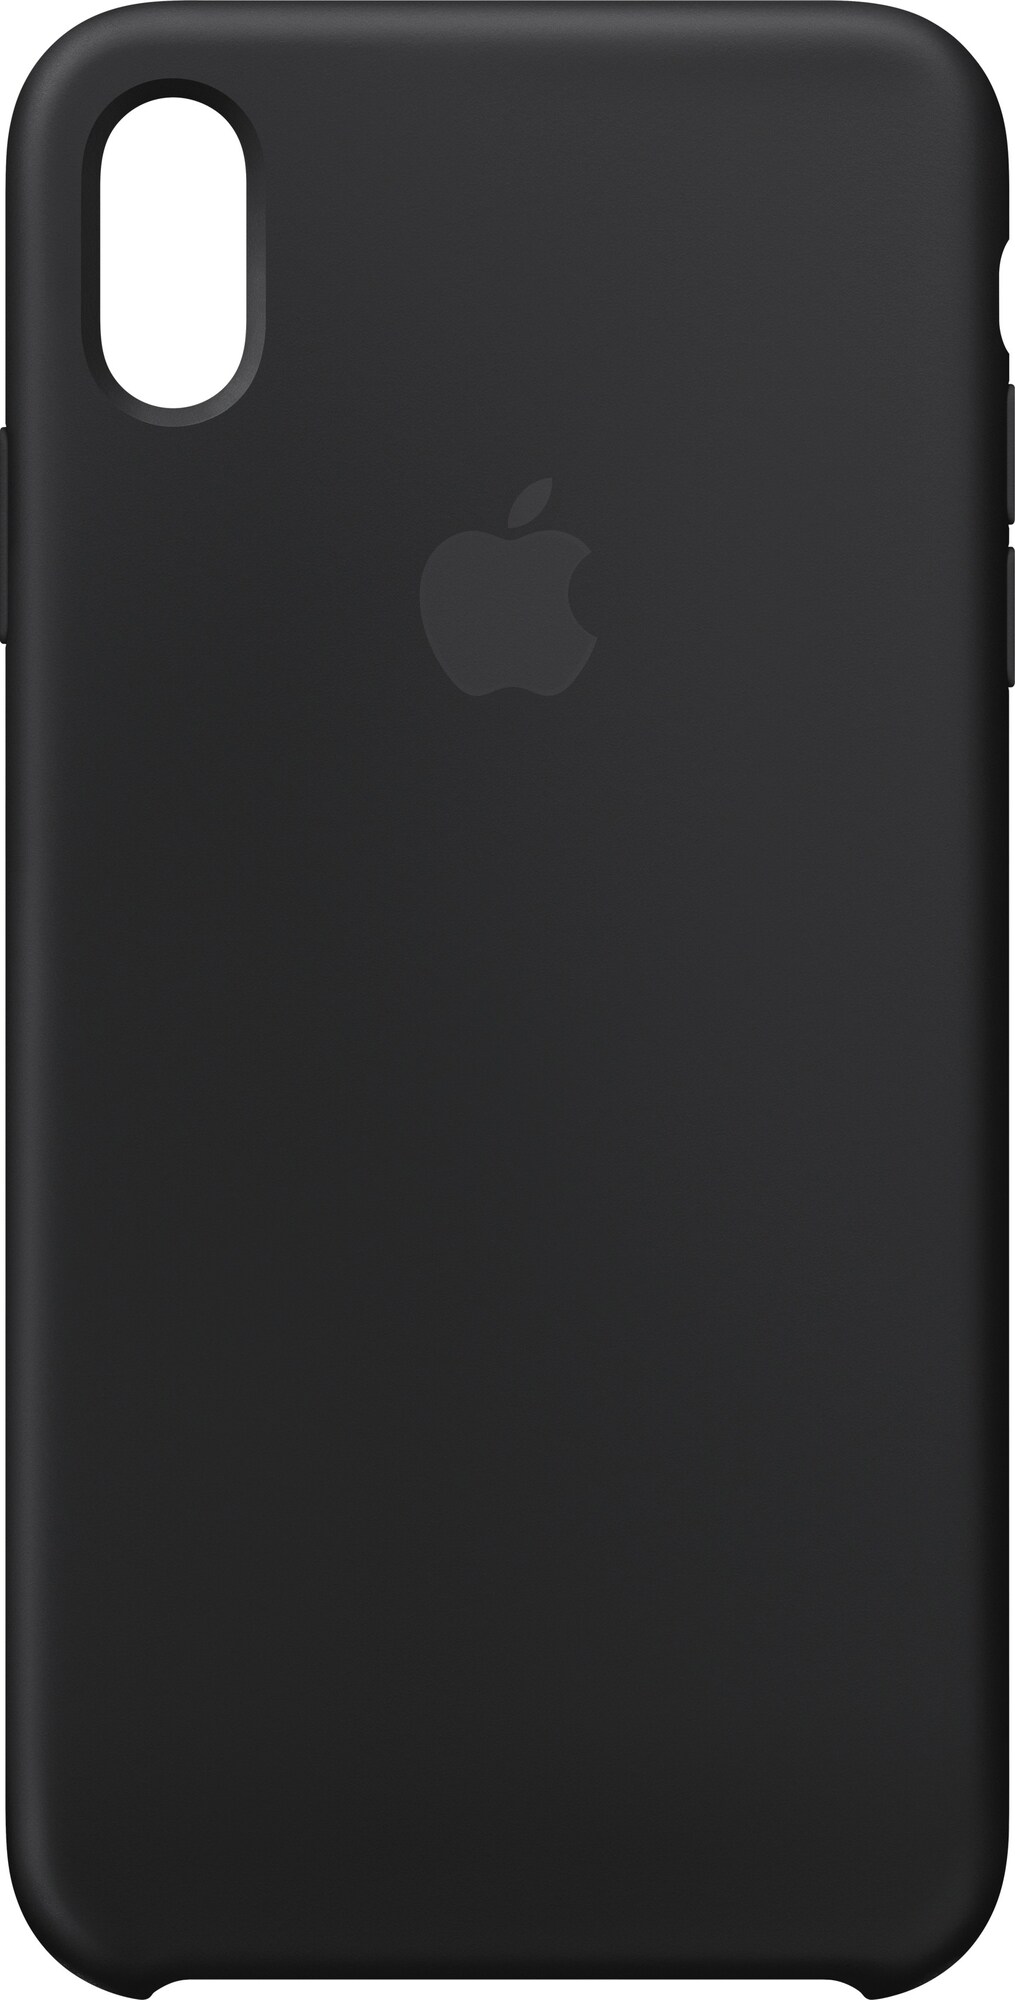 Apple iPhone Xs Max silikonecover - (sort) | Elgiganten